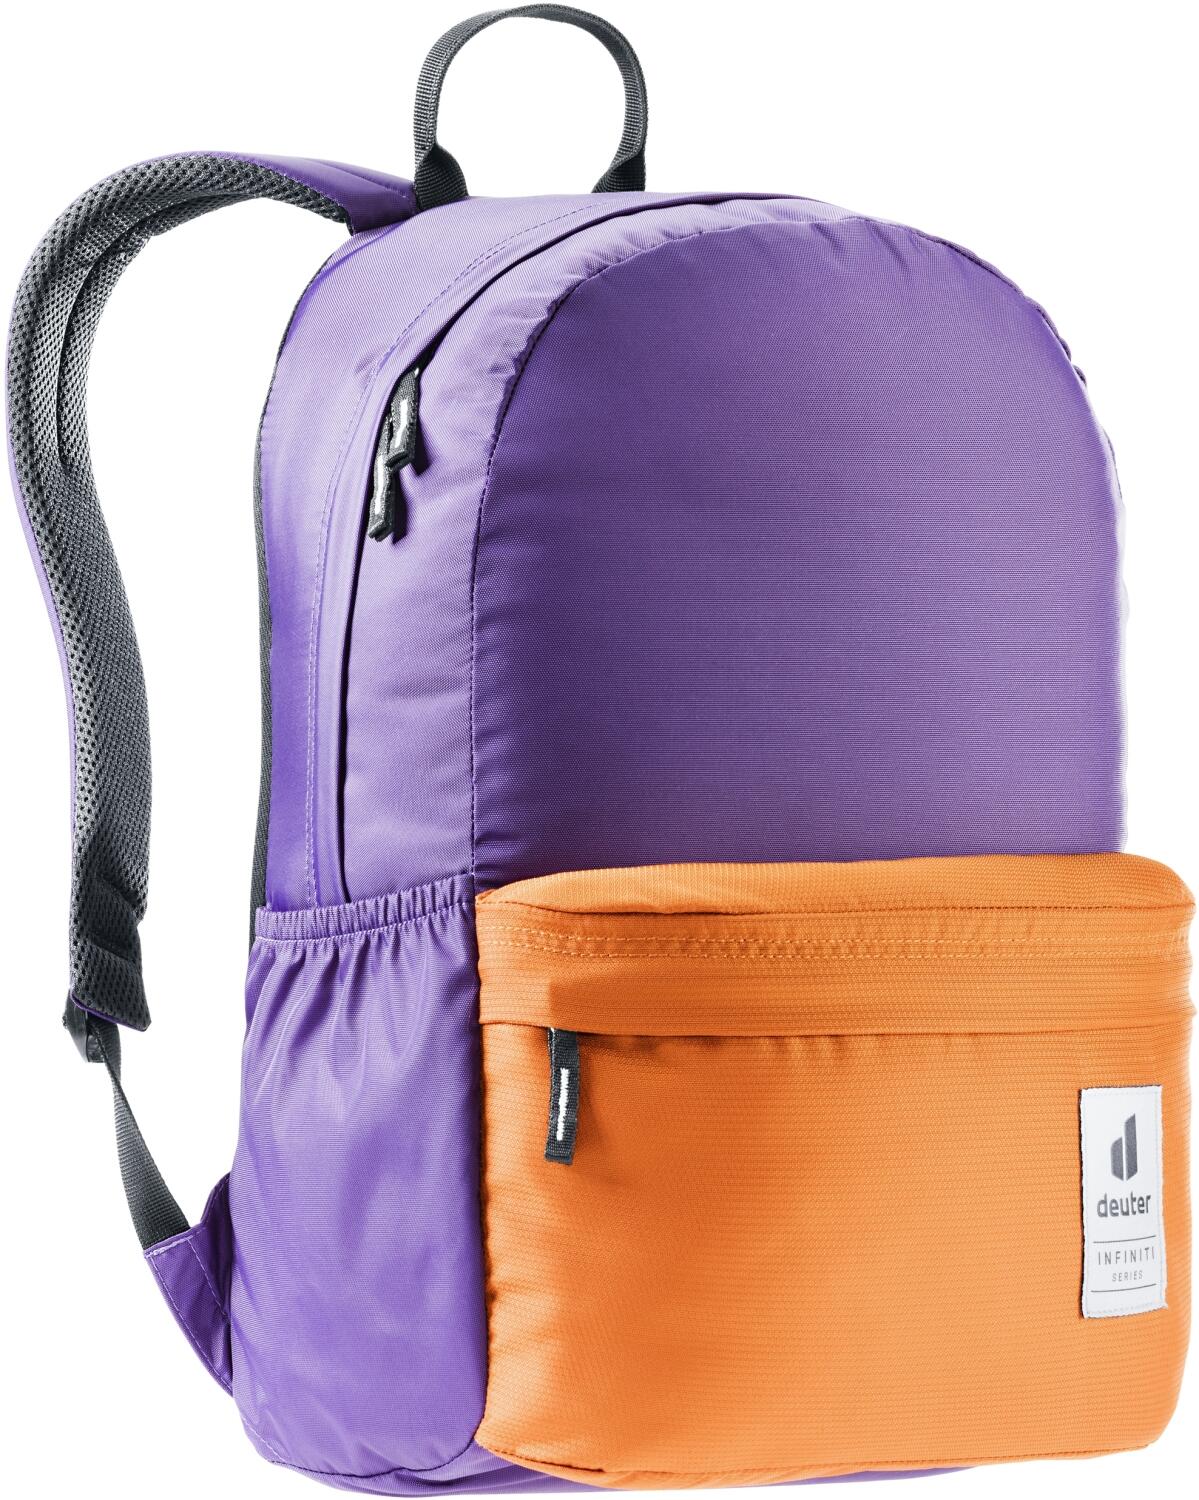 Deuter Infiniti Backpack Lifestyle Rucksack (3917 violet/mandarine) von Deuter